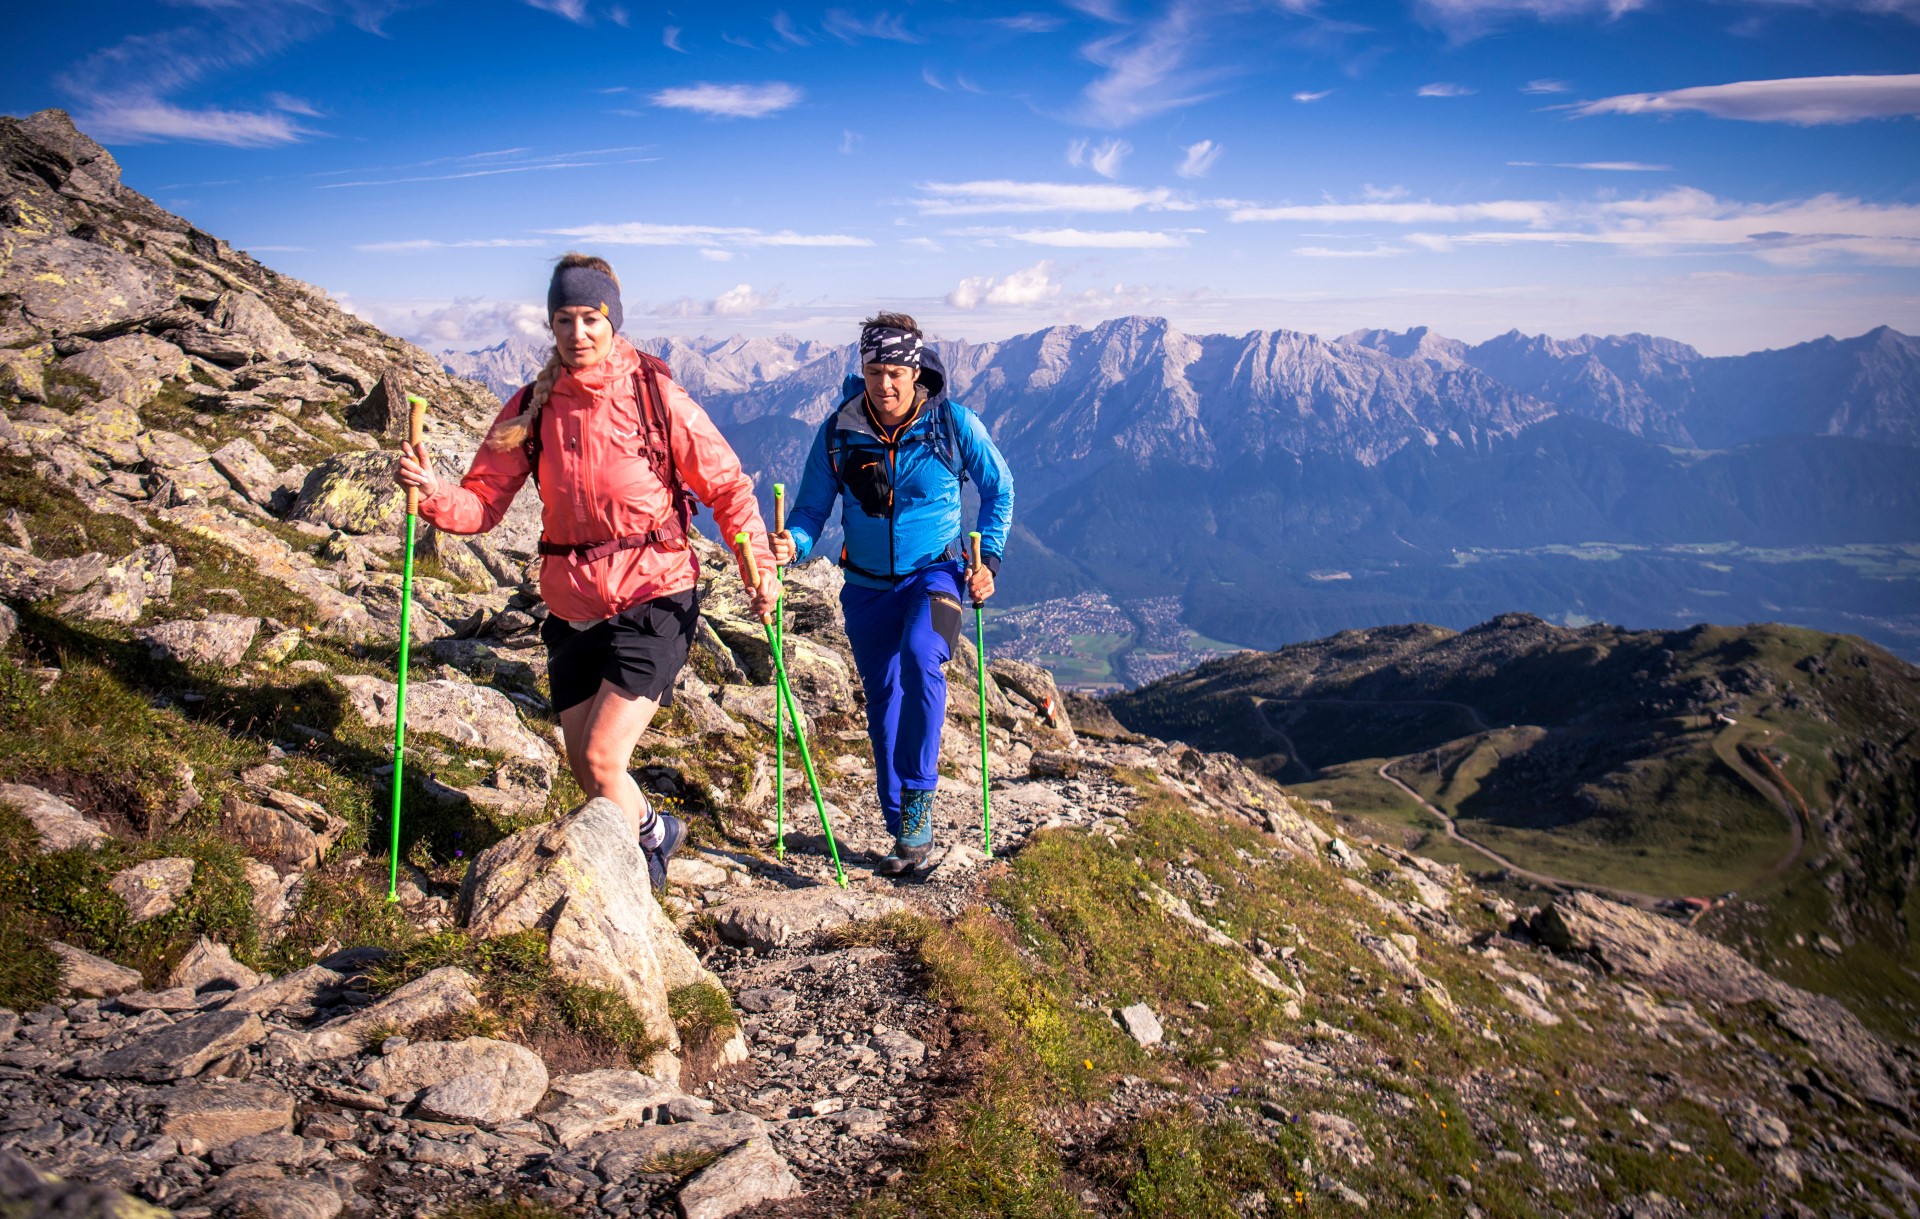 Wandern am Glungezer mit Ausblick auf das Karwendelgebirge. Foto: djd | Tourismusverband Region Hall-Wattens